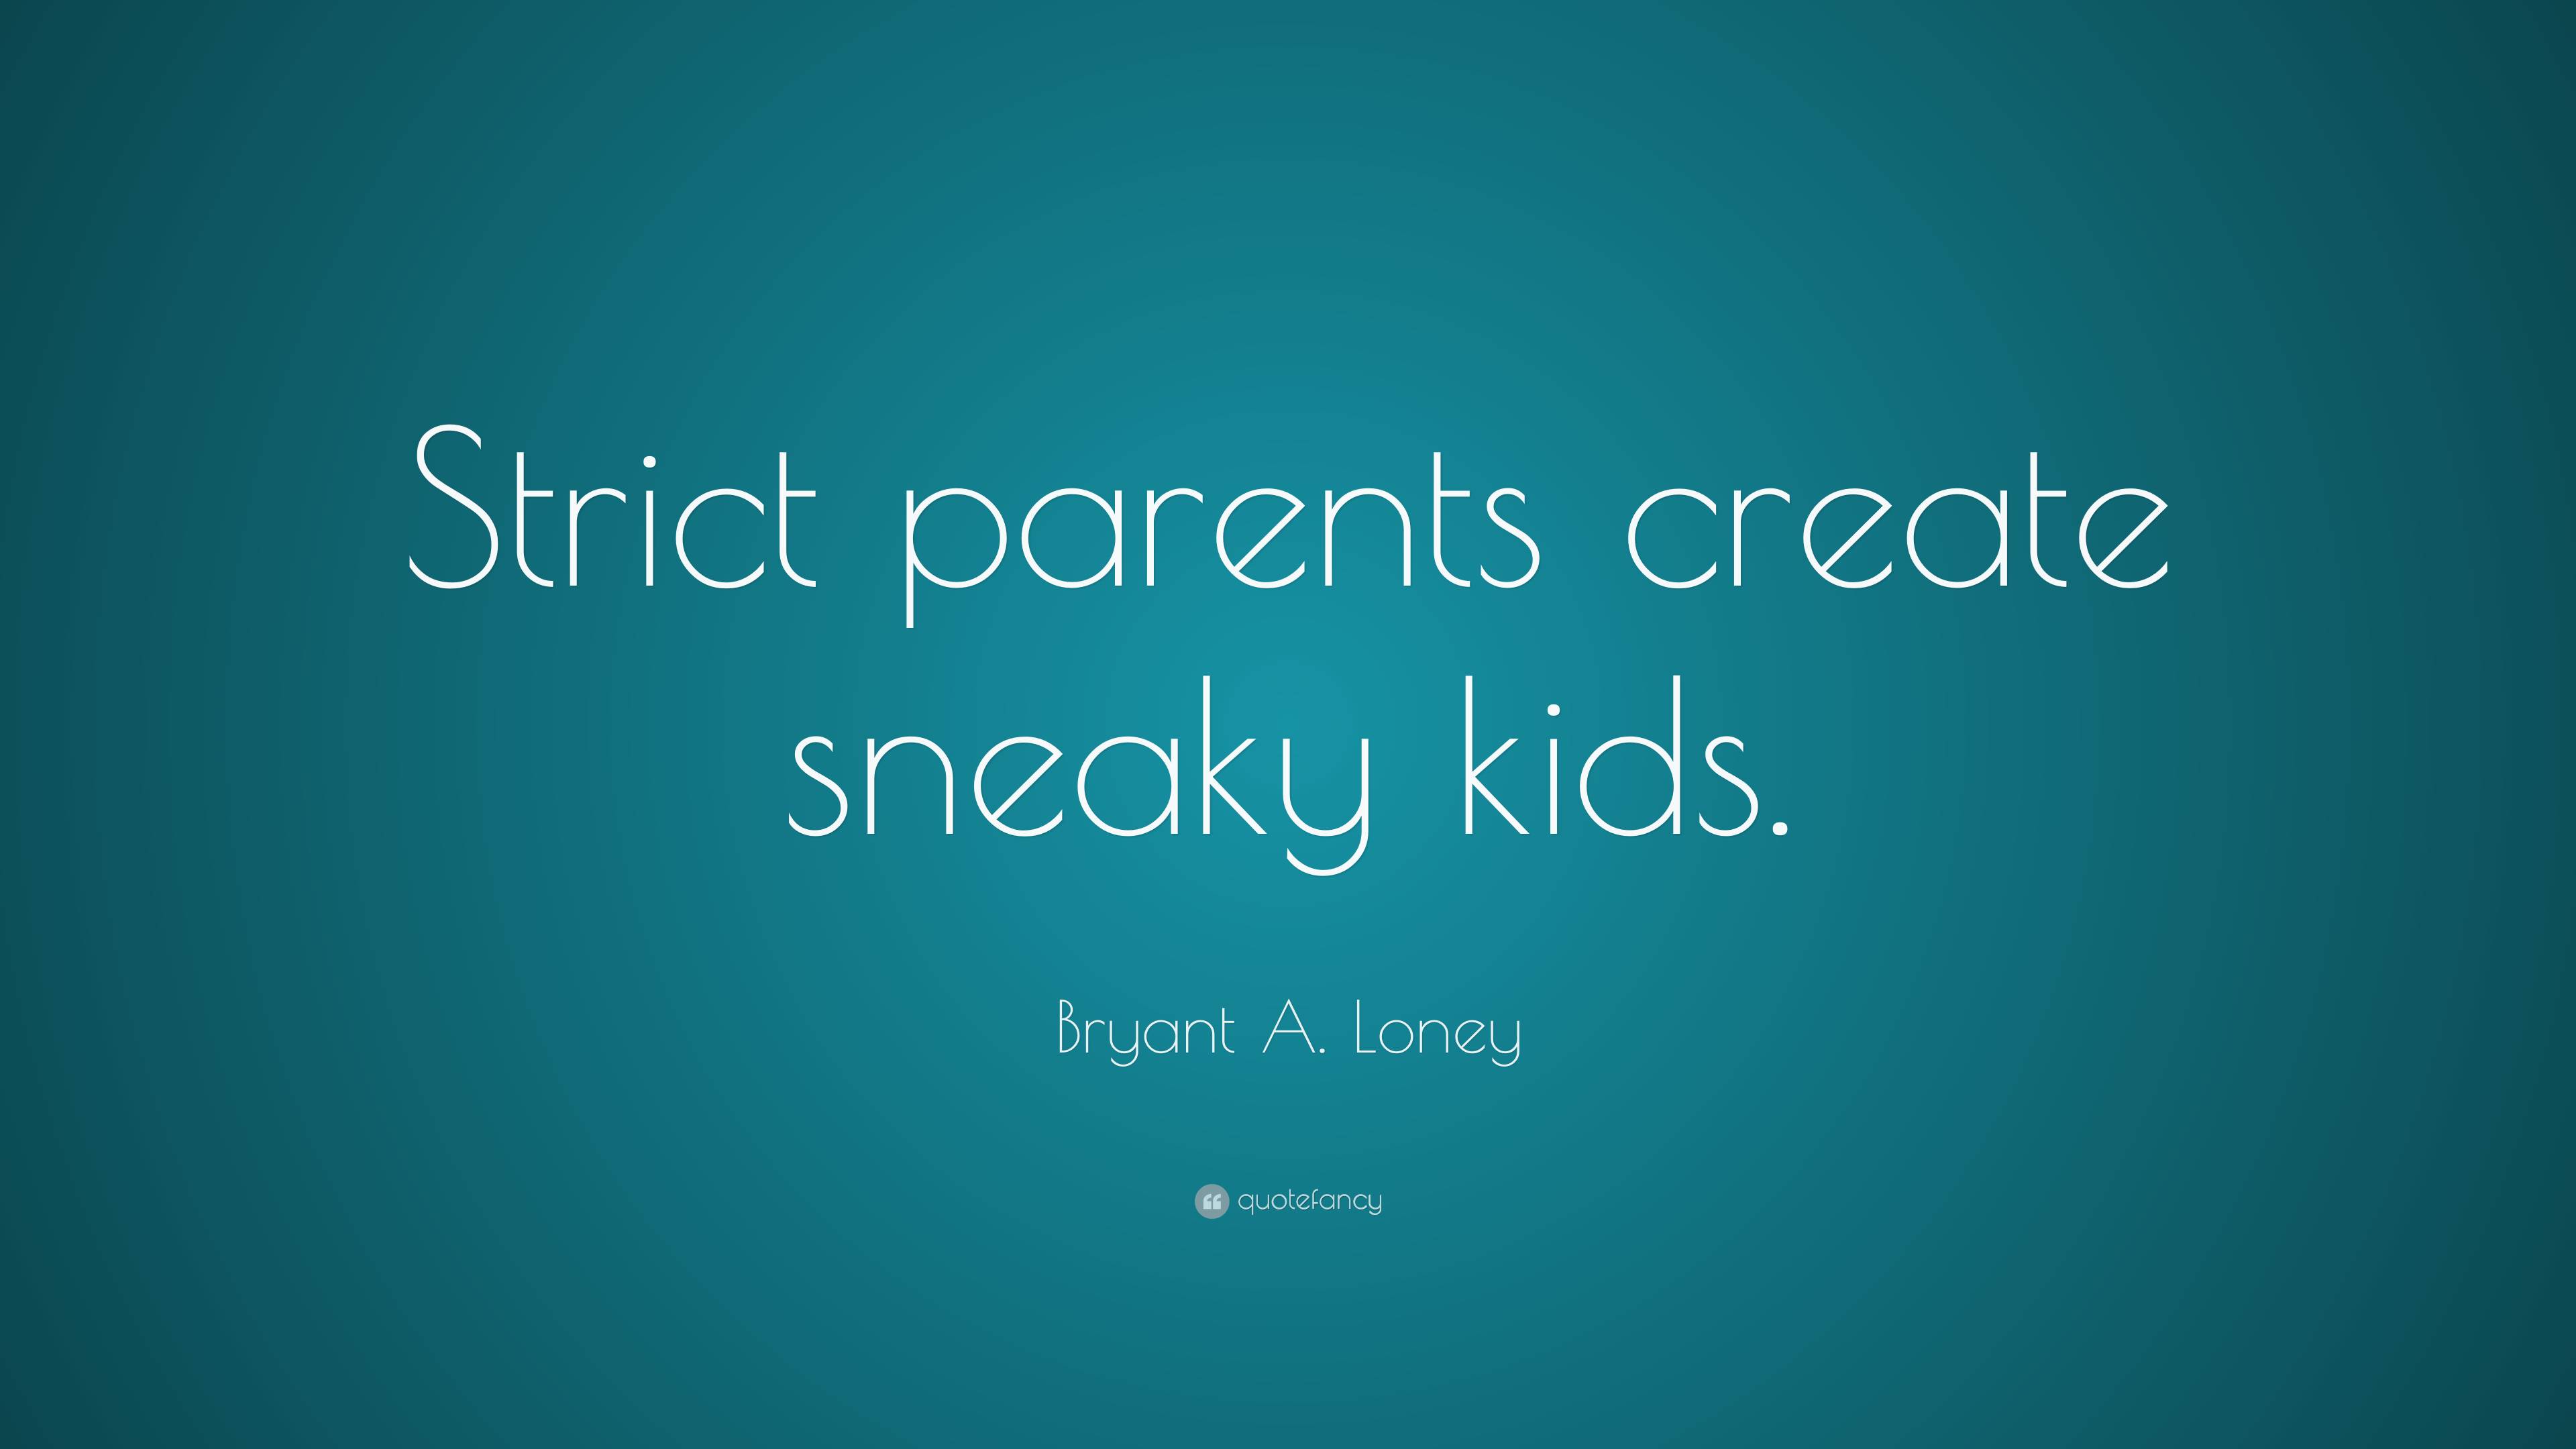 strict parents quotes